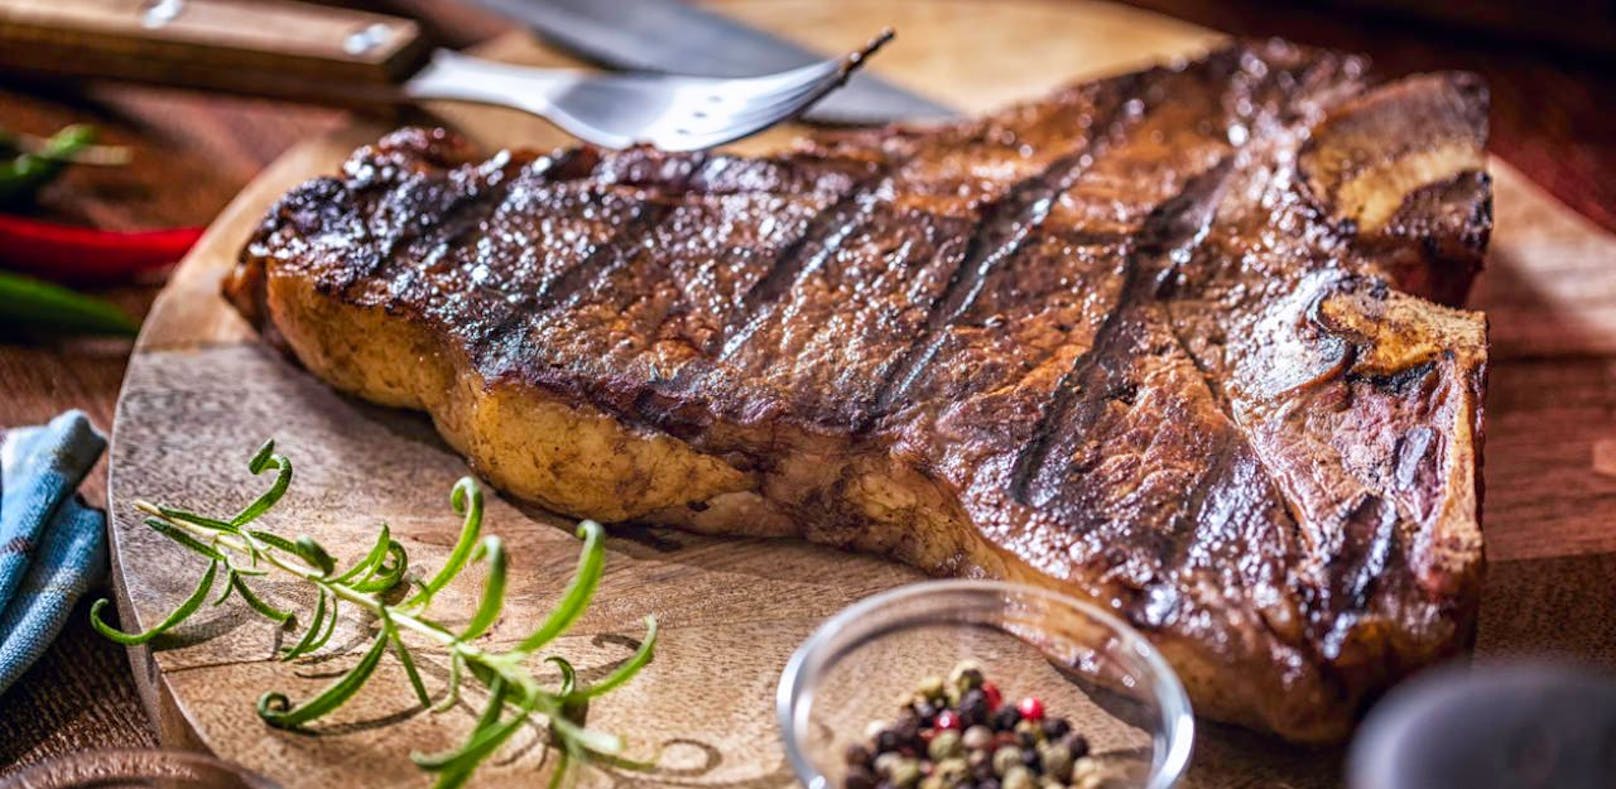 Du kannst dein Steak von Steakmastern zubereiten lassen oder eigenhändig unter Anleitung von Grillprofis.